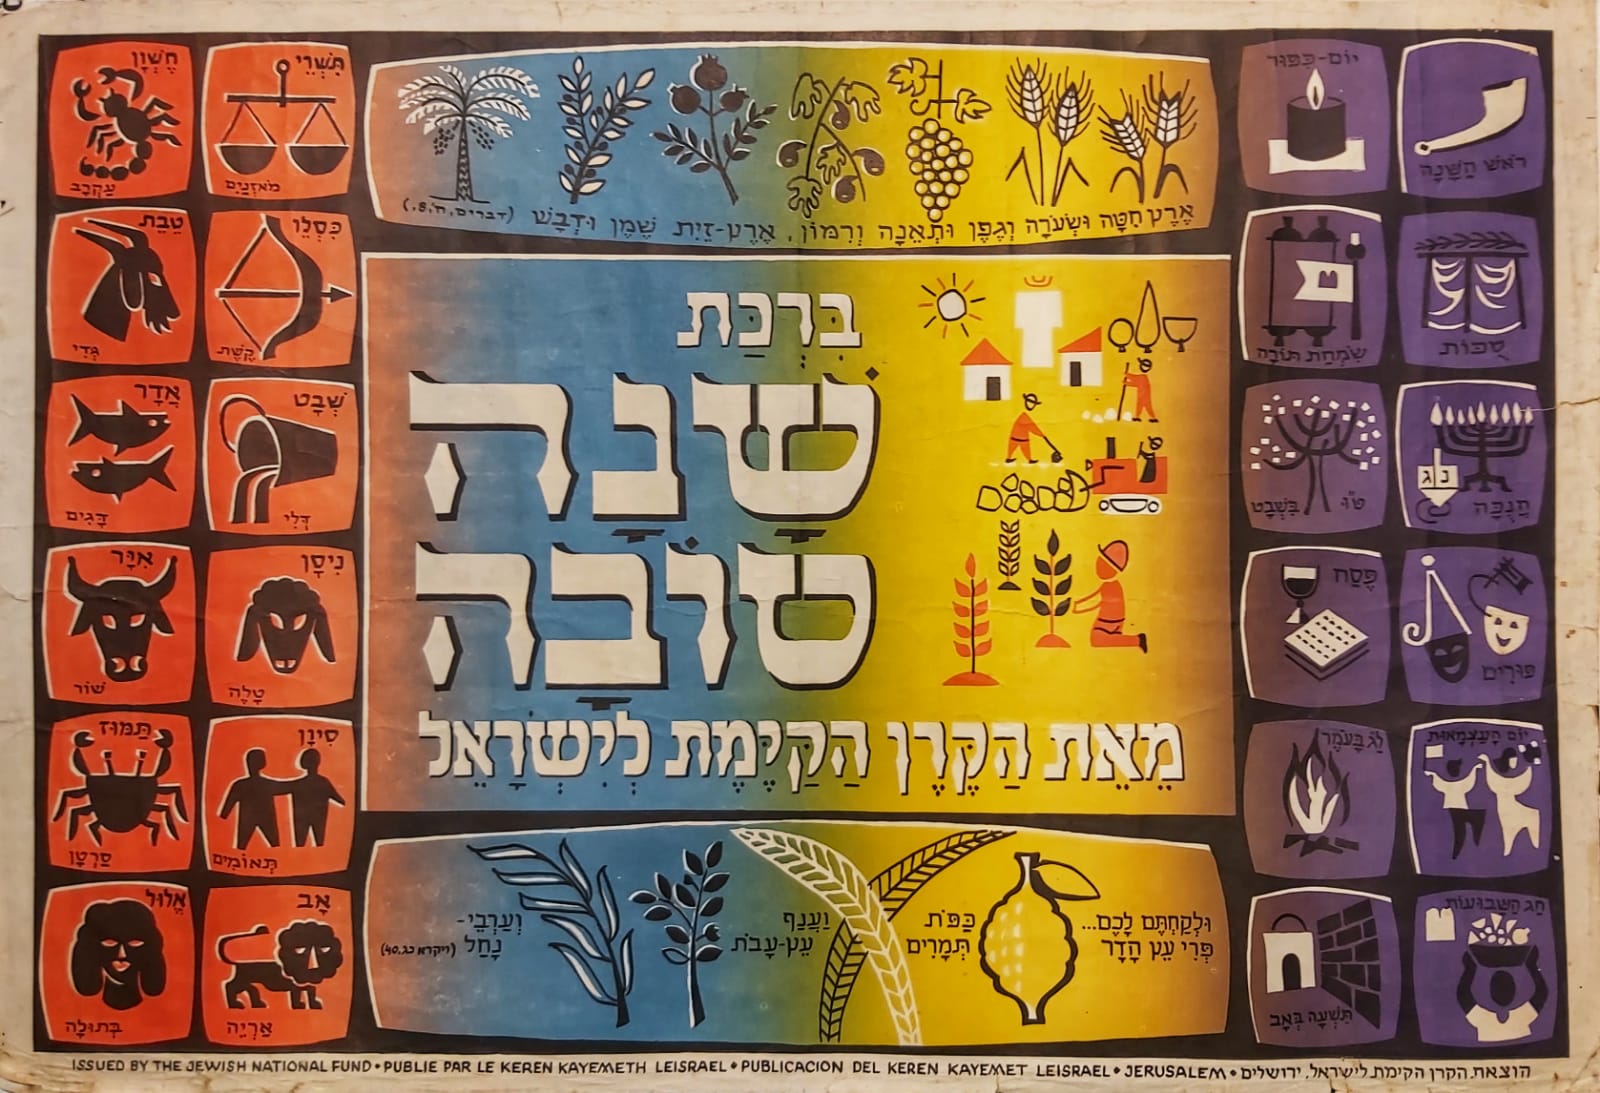 HAPPY NEW YEAR BLasSING Vintage israeli poster israel